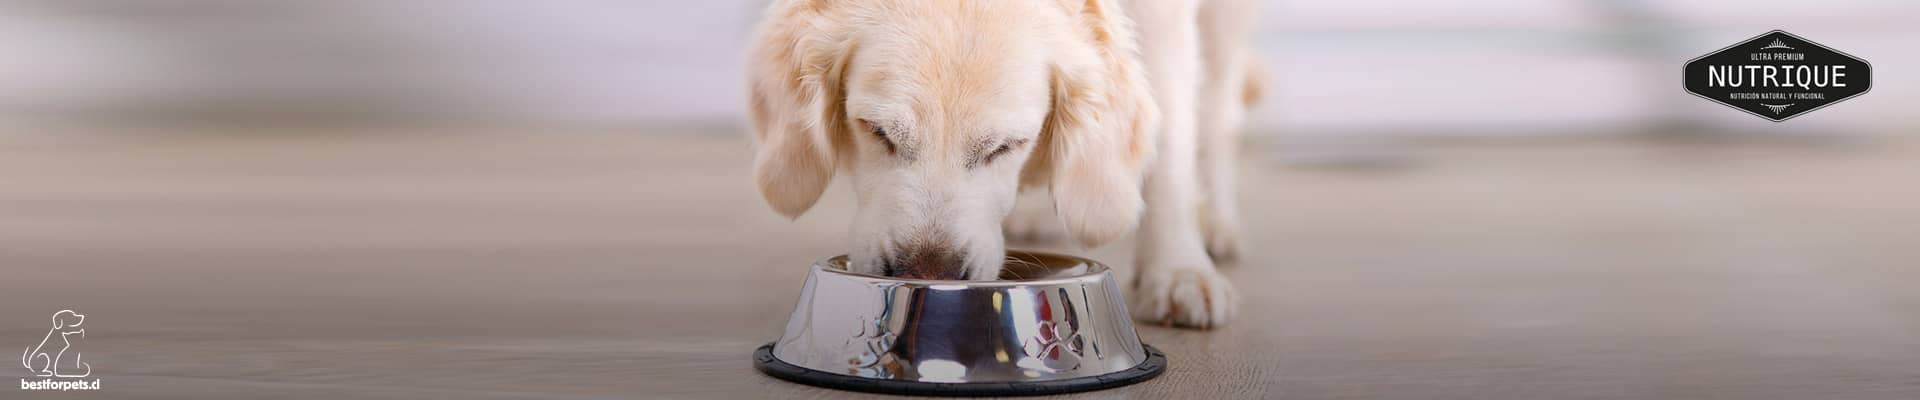 Alimentos NUTRIQUE para perros